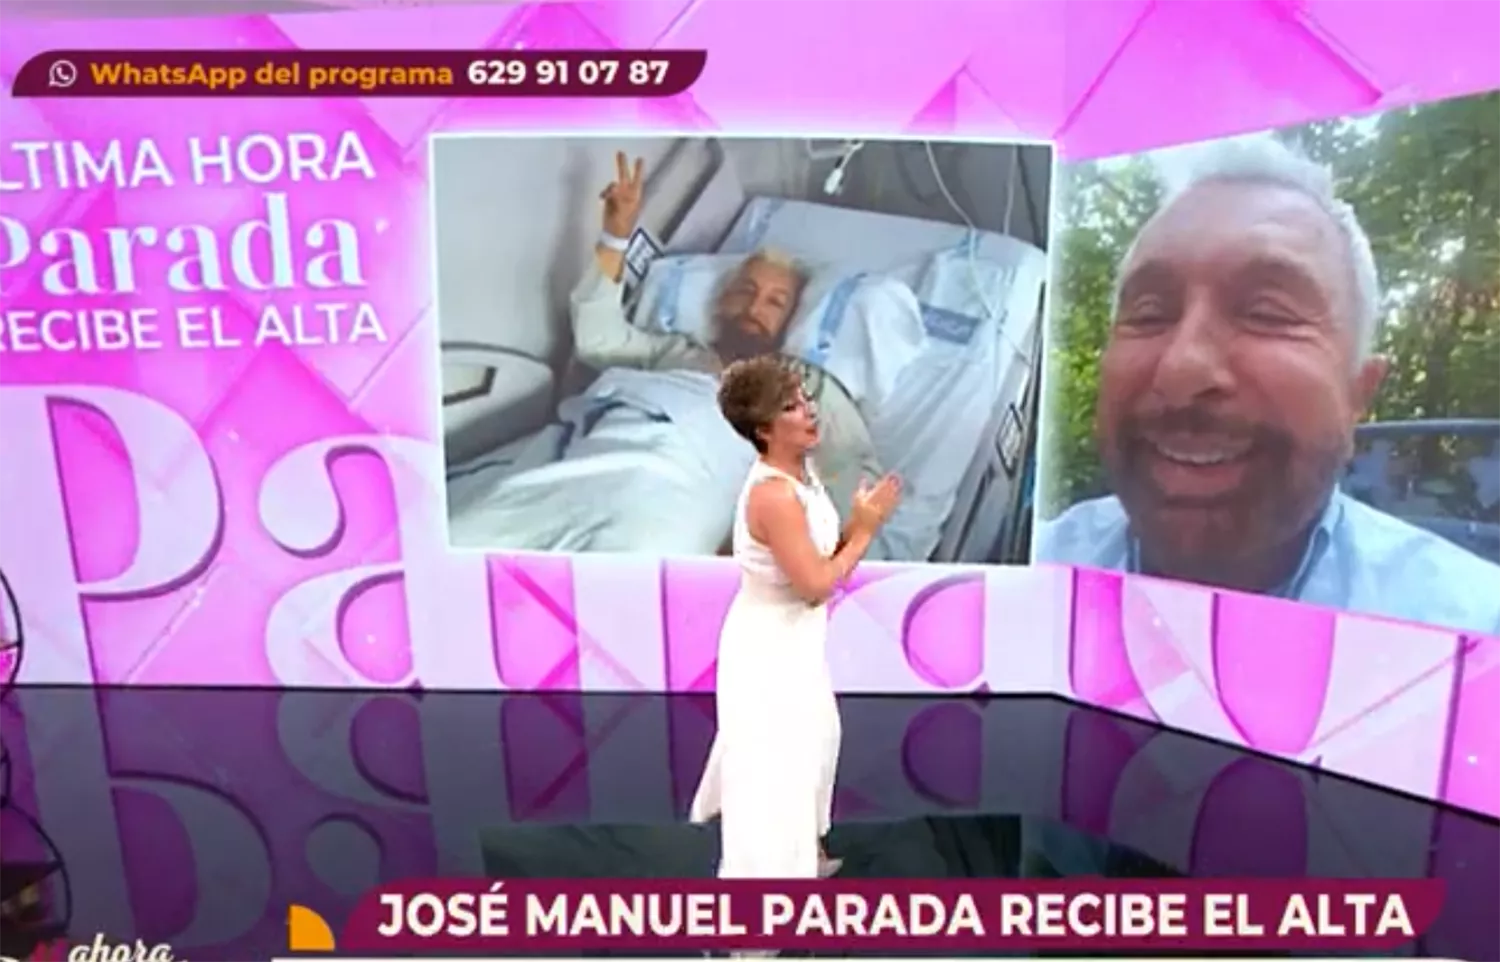 José Manuel Parada recibe el alta tras ser operado de urgencia en el Hospital del Bierzo